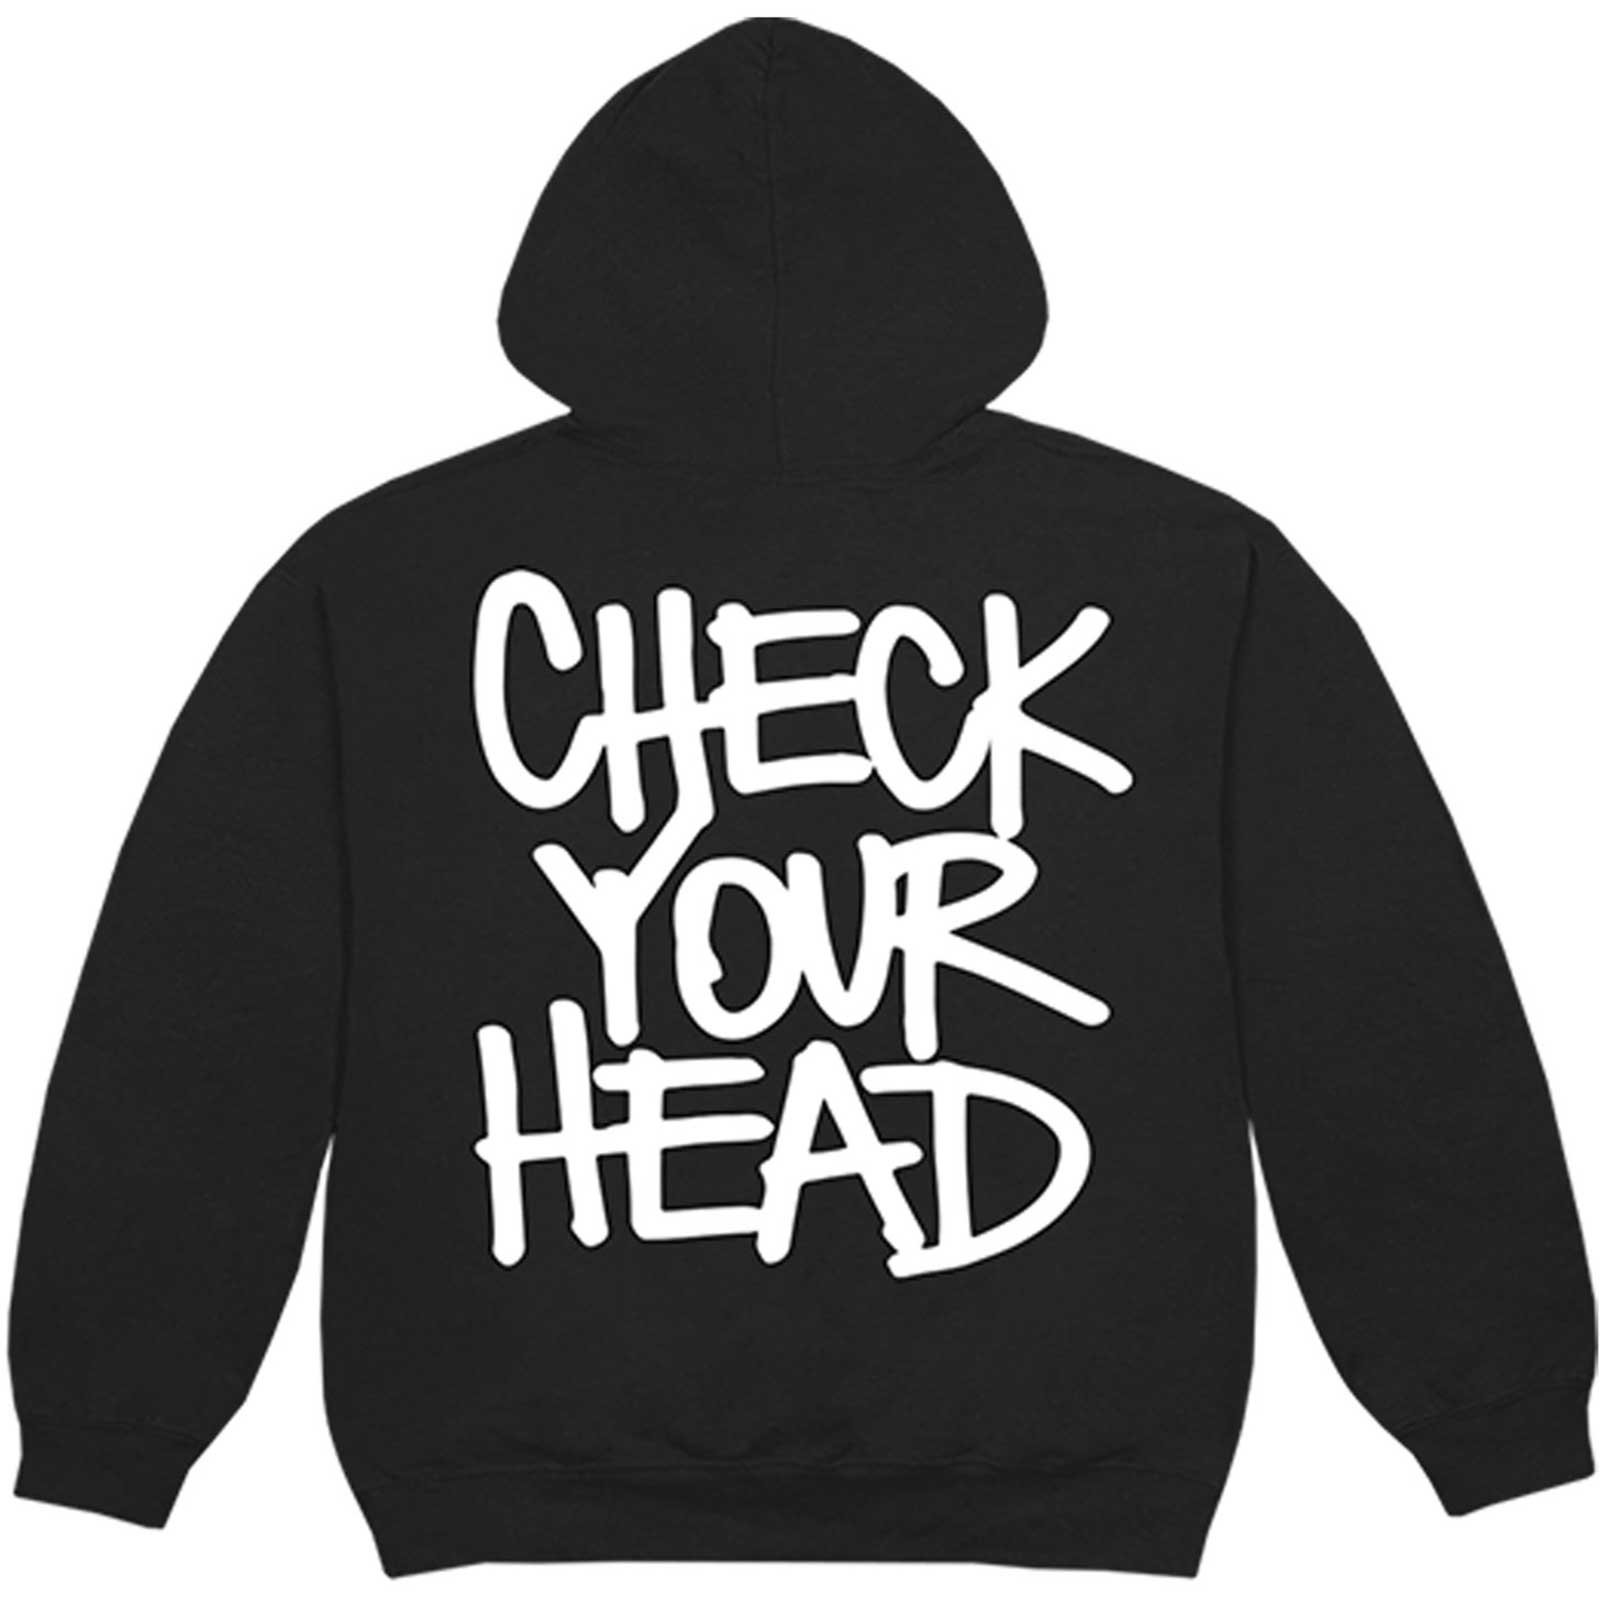 The Beastie Boys Sweat à capuche unisexe – Check Your Head – Noir Design sous licence officielle